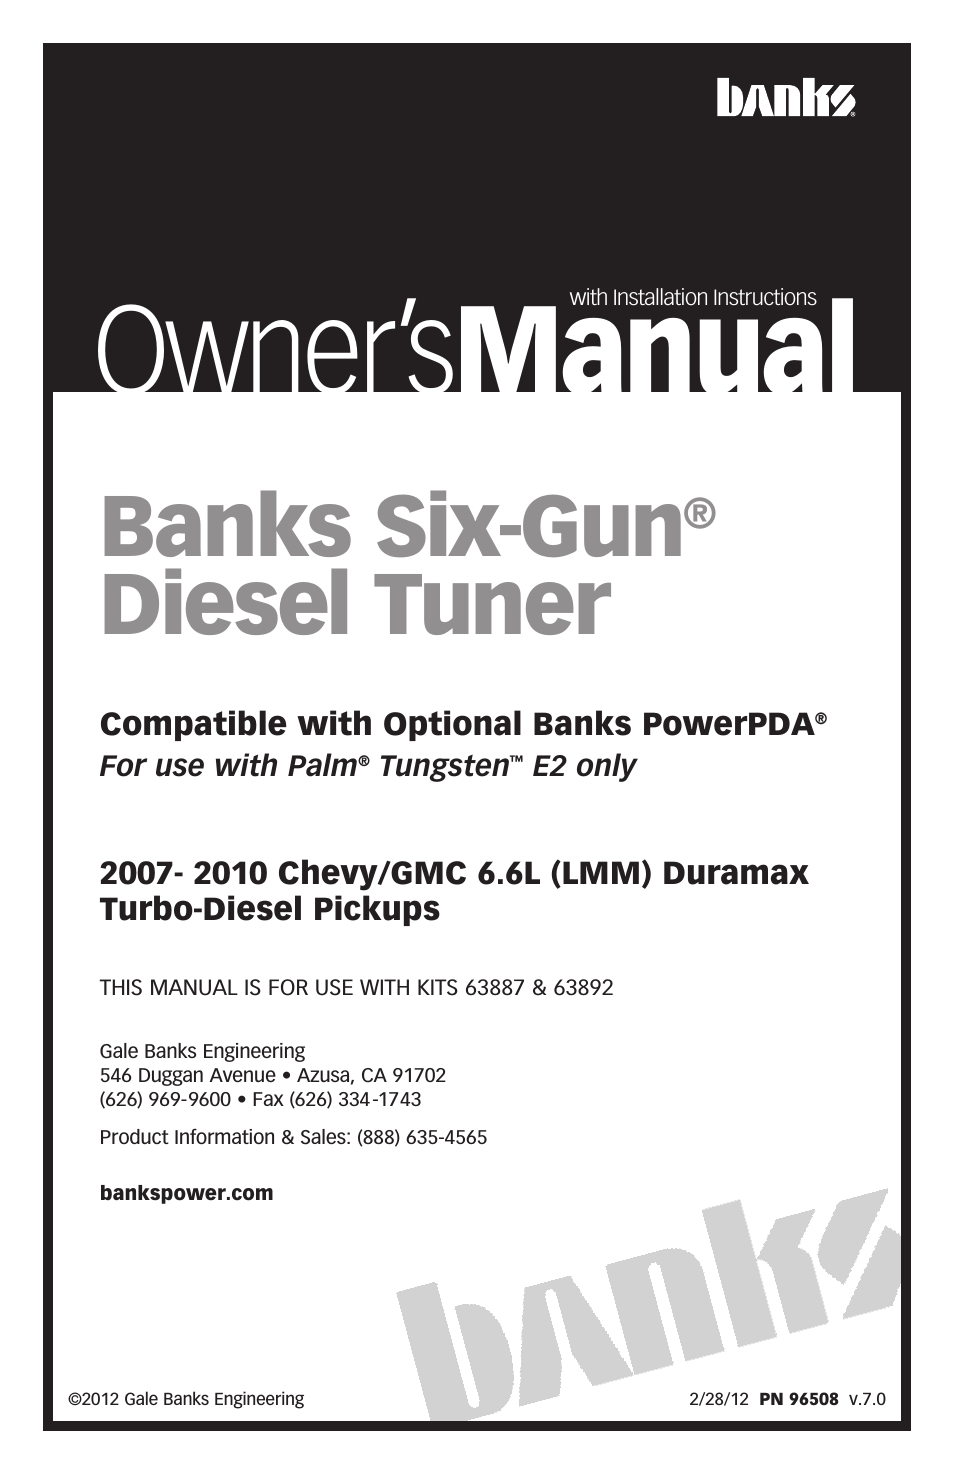 Chevy_GMC Trucks: Duramax LMM (Diesel ’07 - 10 6.6L) Tuner- Six-Gun Diesel Tuner '07-09 (PDA) Compatible w_ Optional PowerPDA